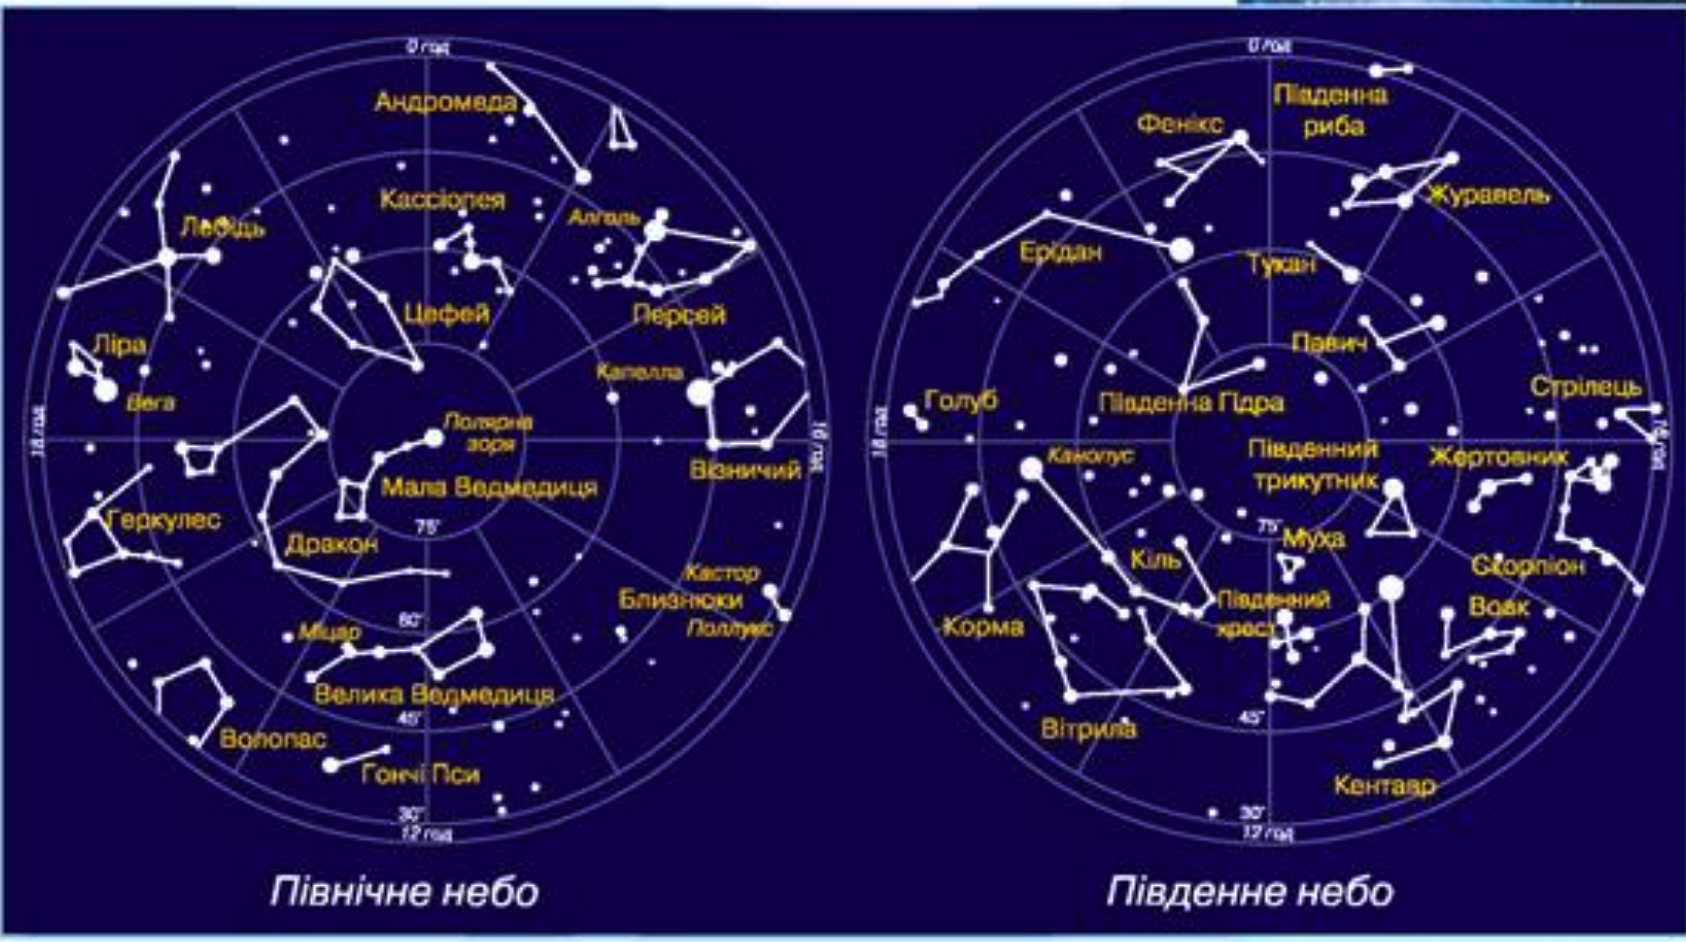 Южное полушарие звездного неба с названиями созвездий. Карта звездного неба Северного полушария с созвездиями. Карта звёздного неба Северное и Южное полушария. Околополярные созвездия Северного полушария.